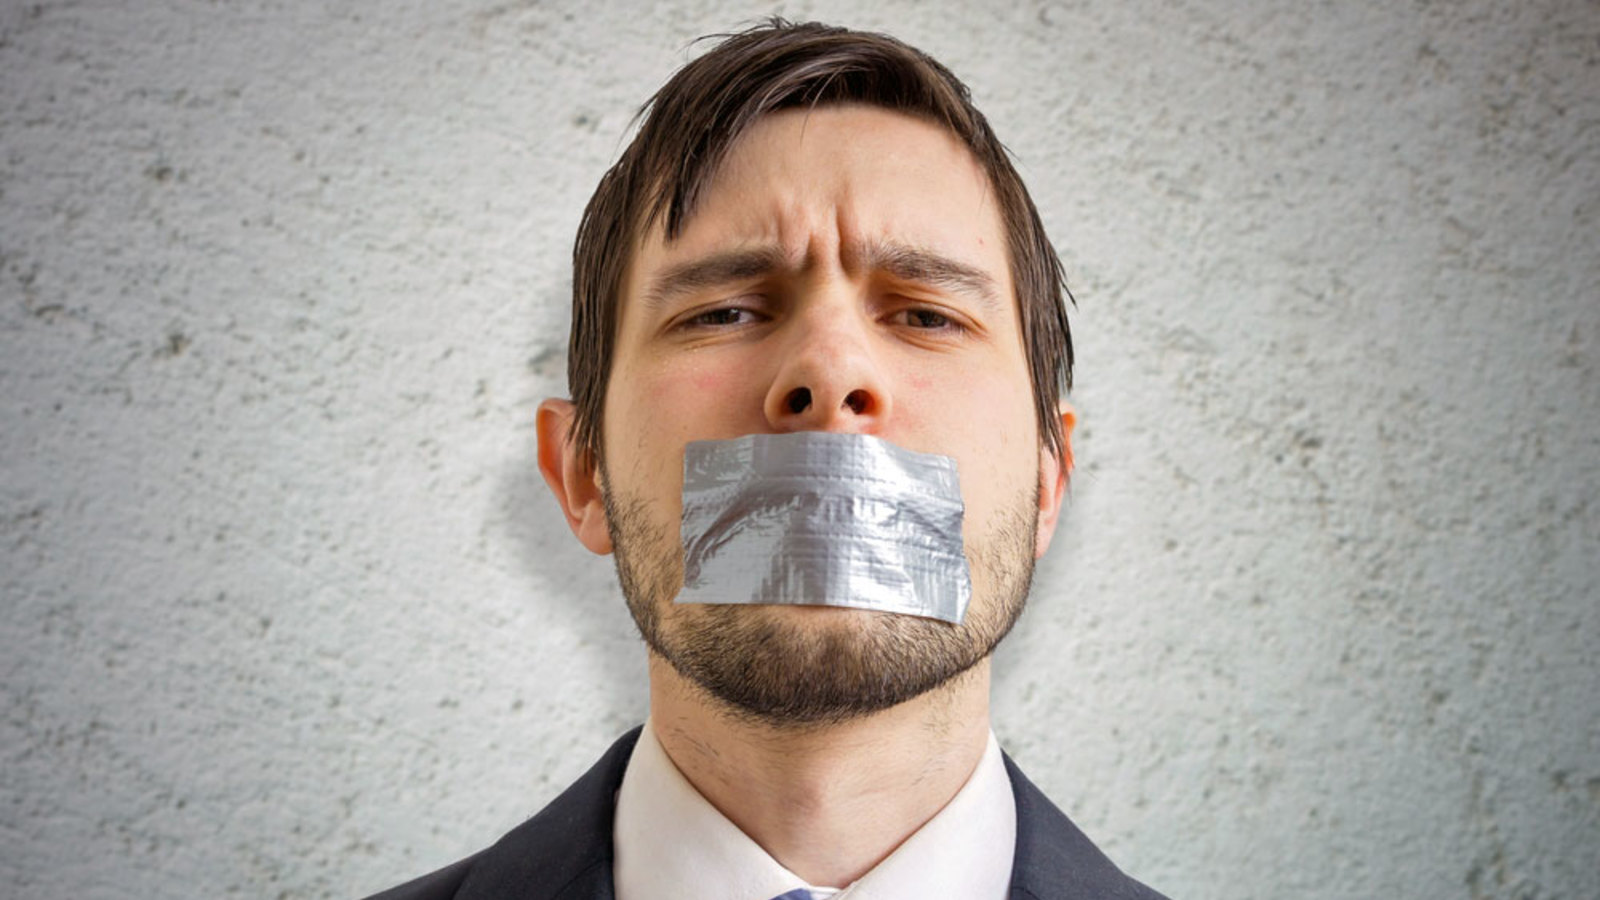 Die Zensur schlägt auf die Zensoren zurück